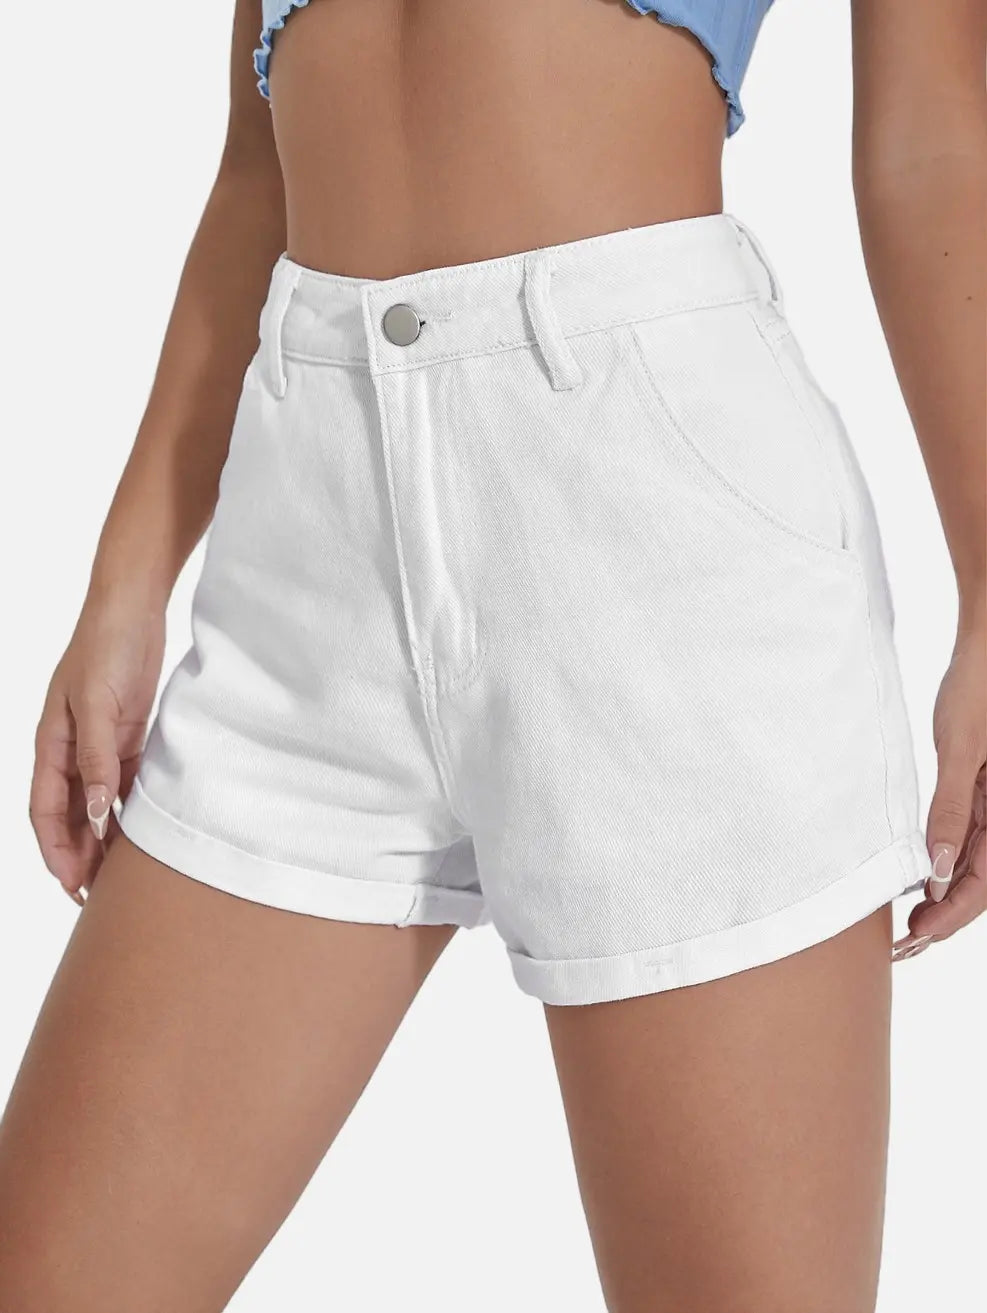 Short Jeans Branco com Barra Dobrada